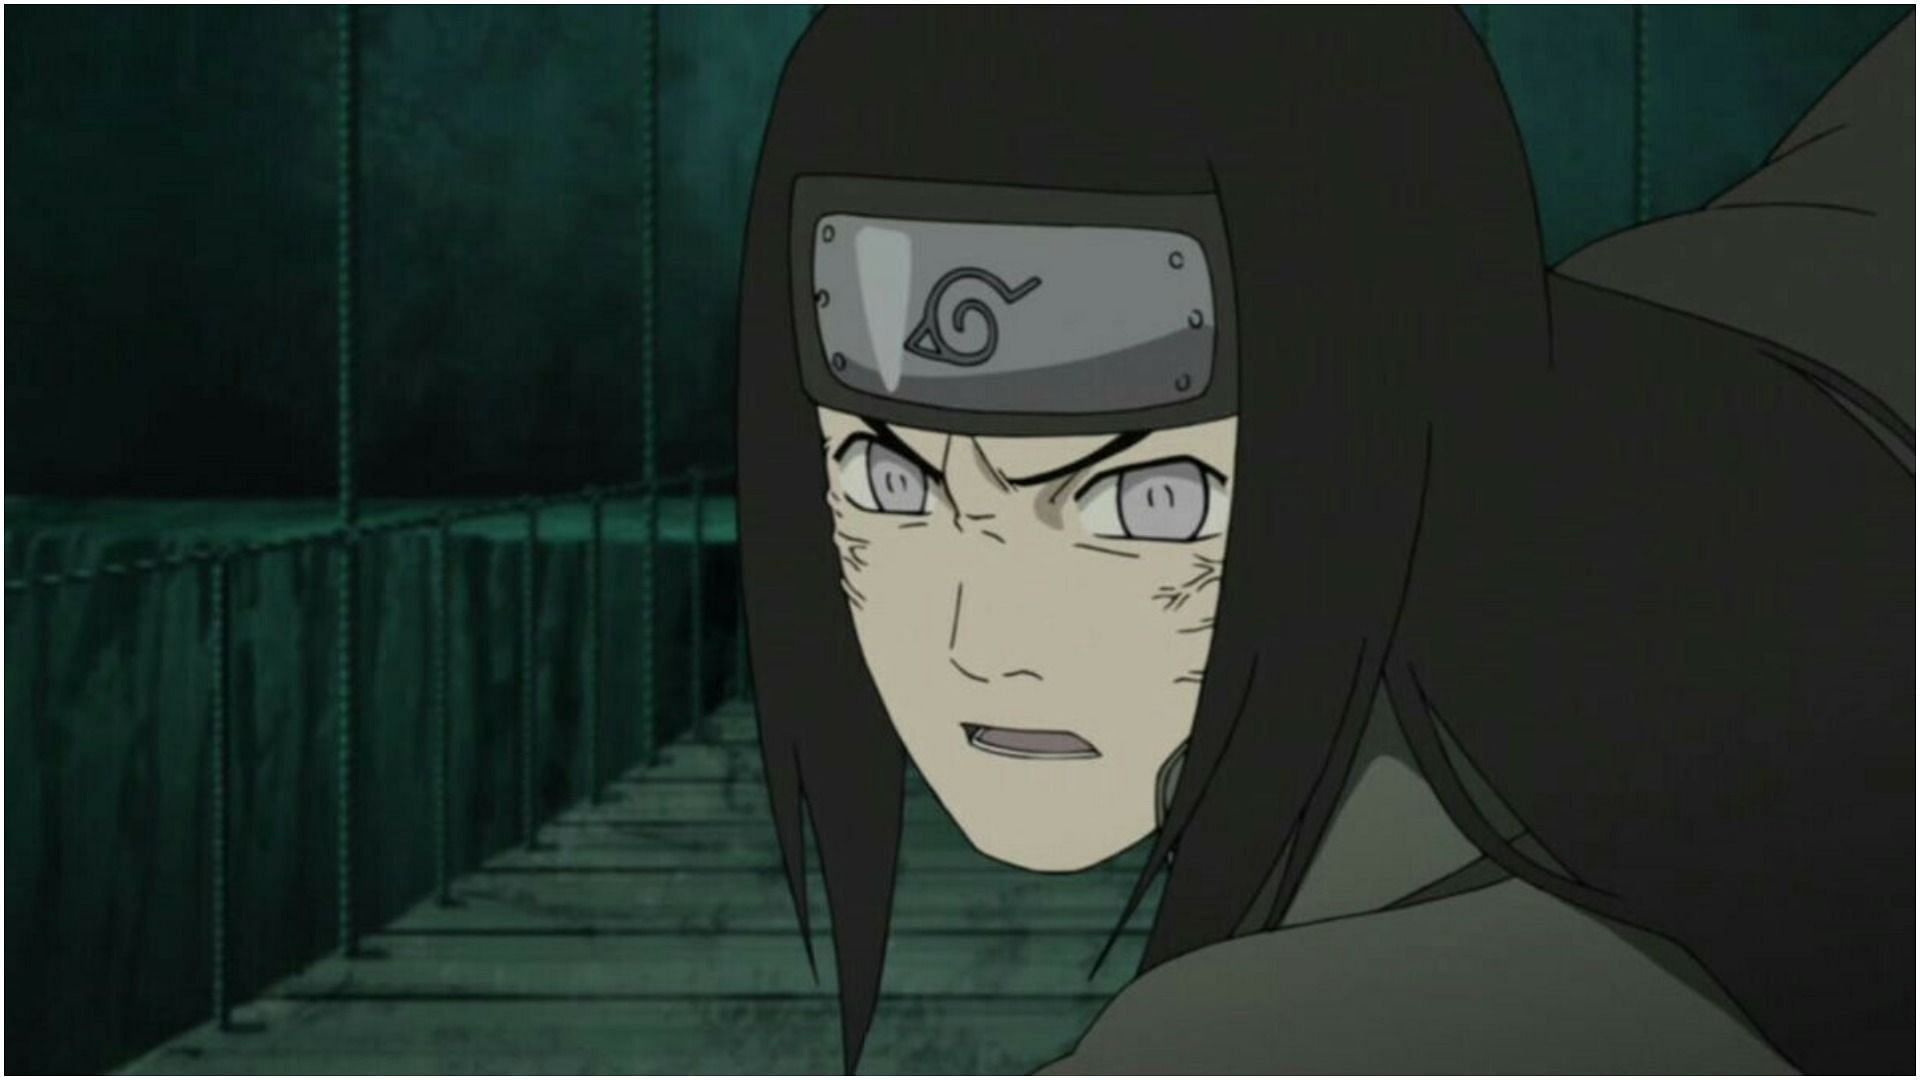 Neji Hyuga as shown in the anime (Image via Naruto)